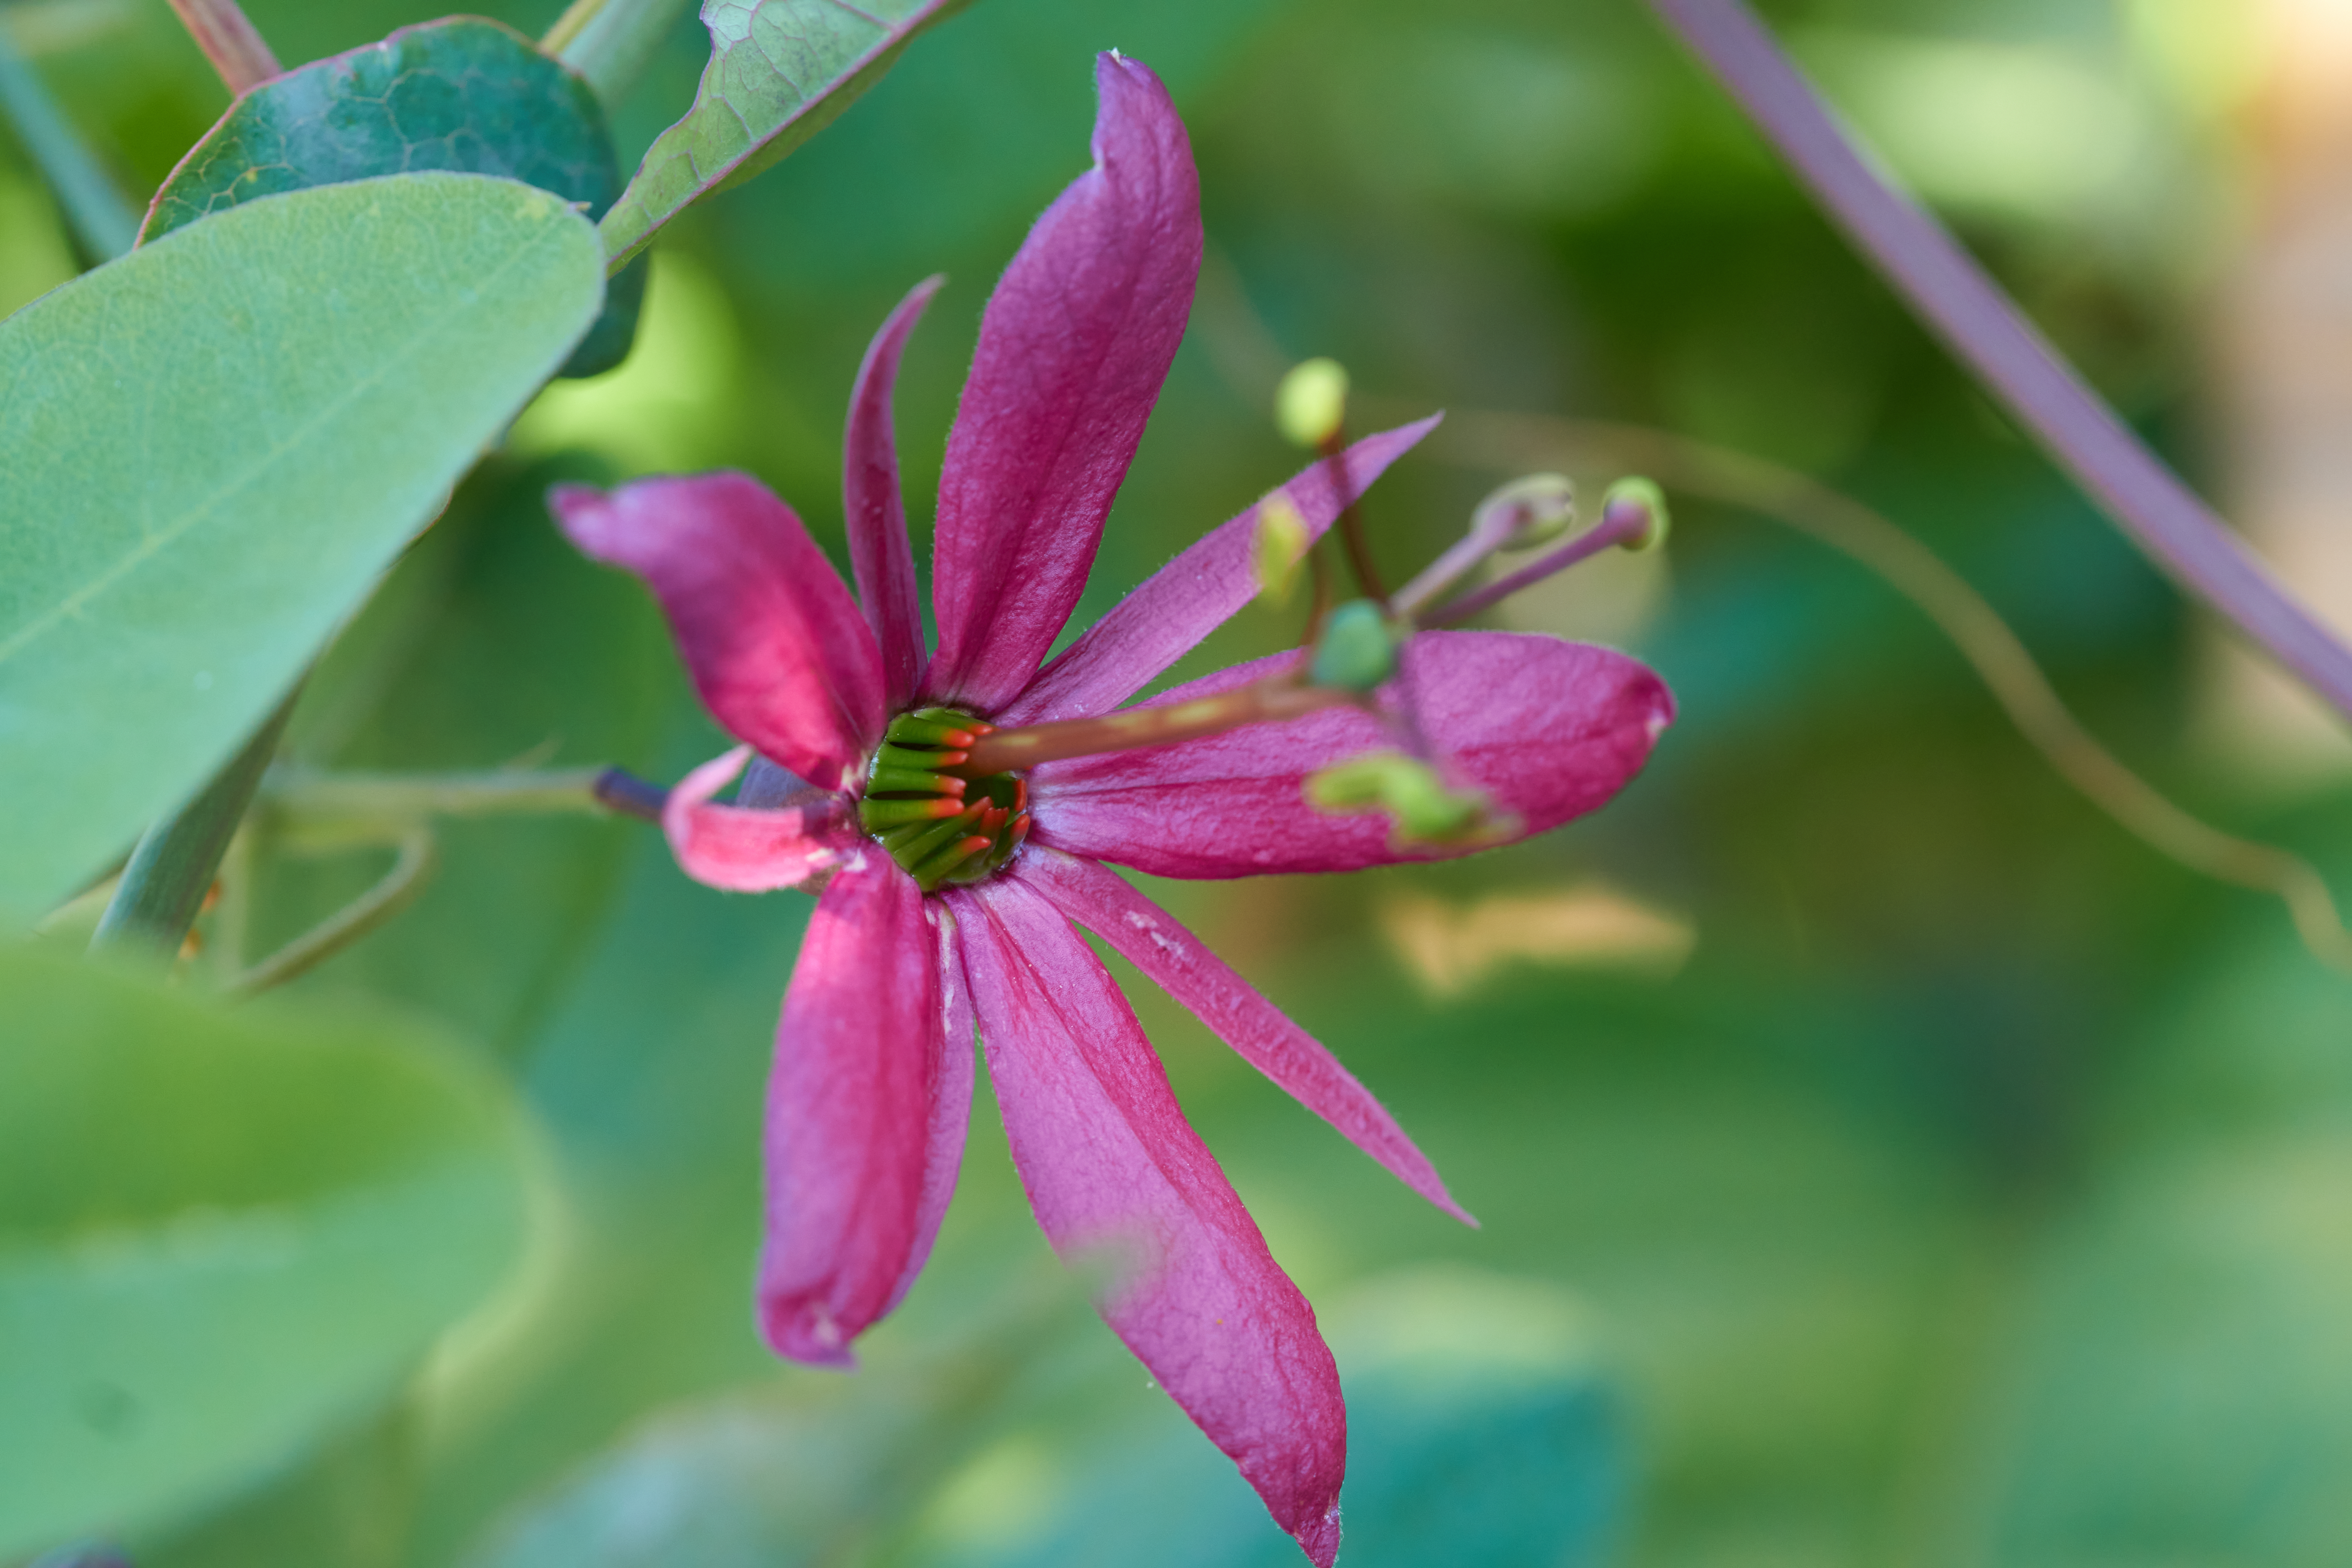 Passiflora perfoliata